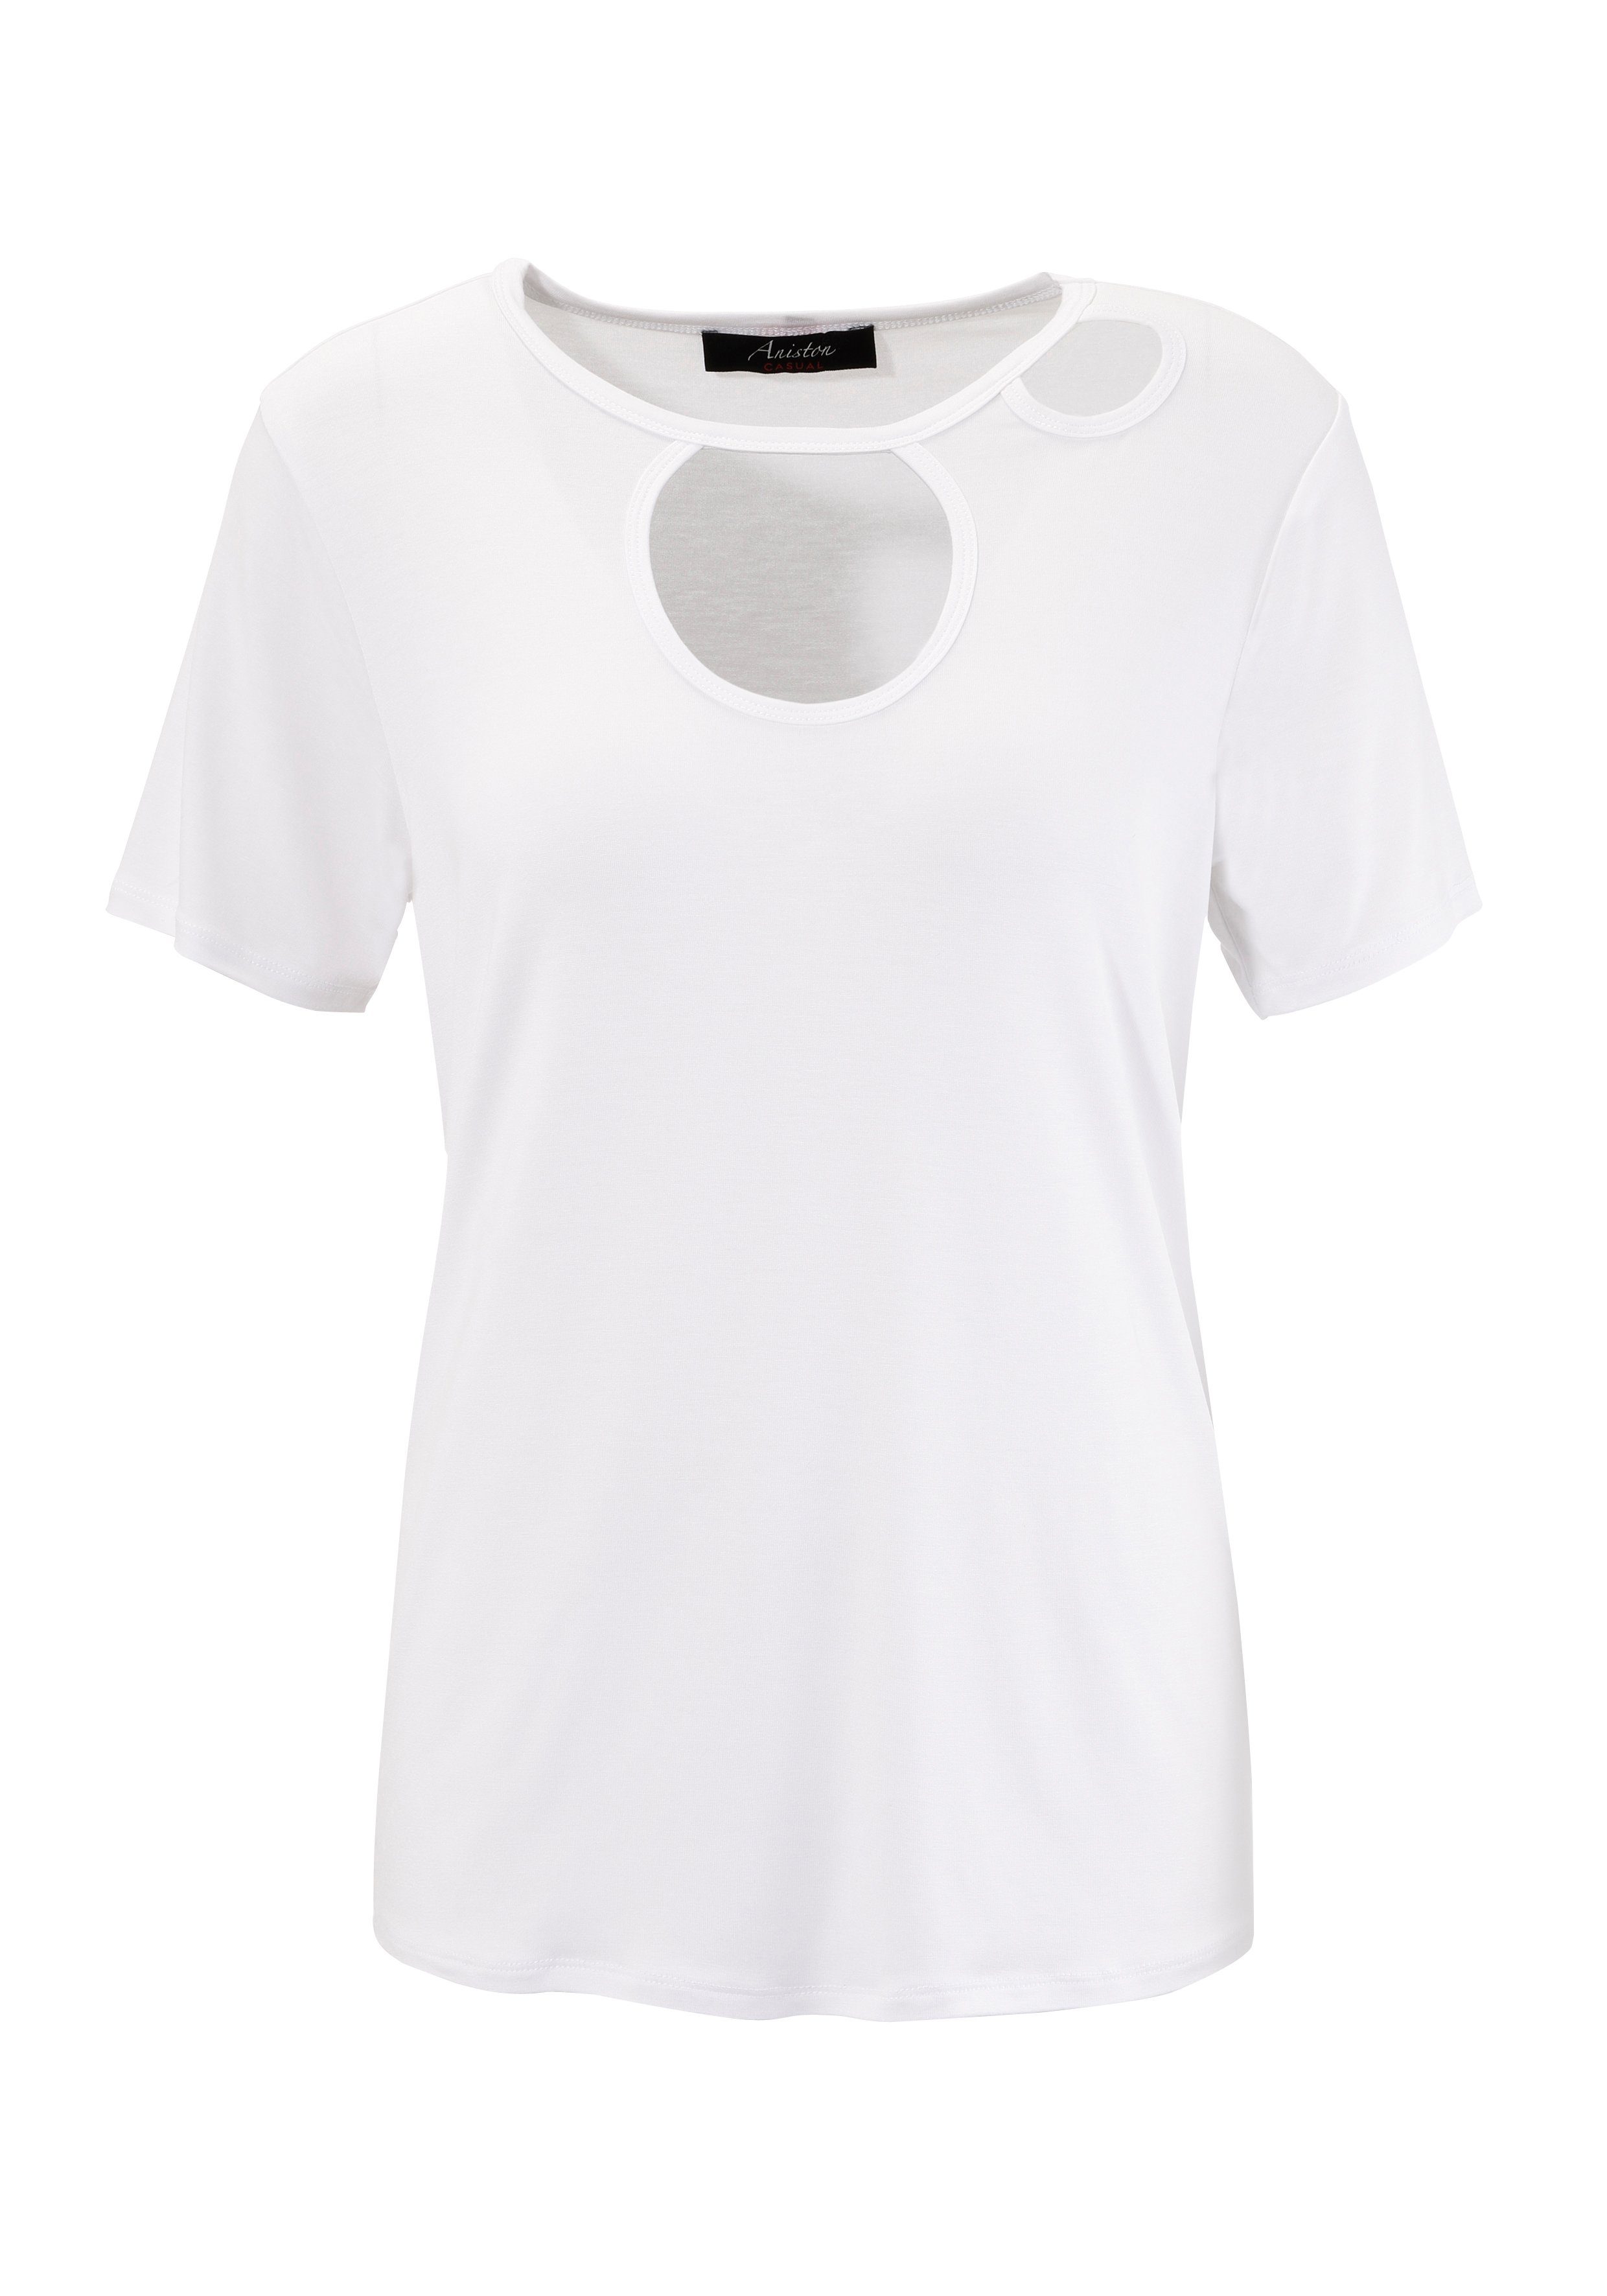 Aniston CASUAL T-shirt met trendy cut-outs aan de voorkant nieuwe collectie